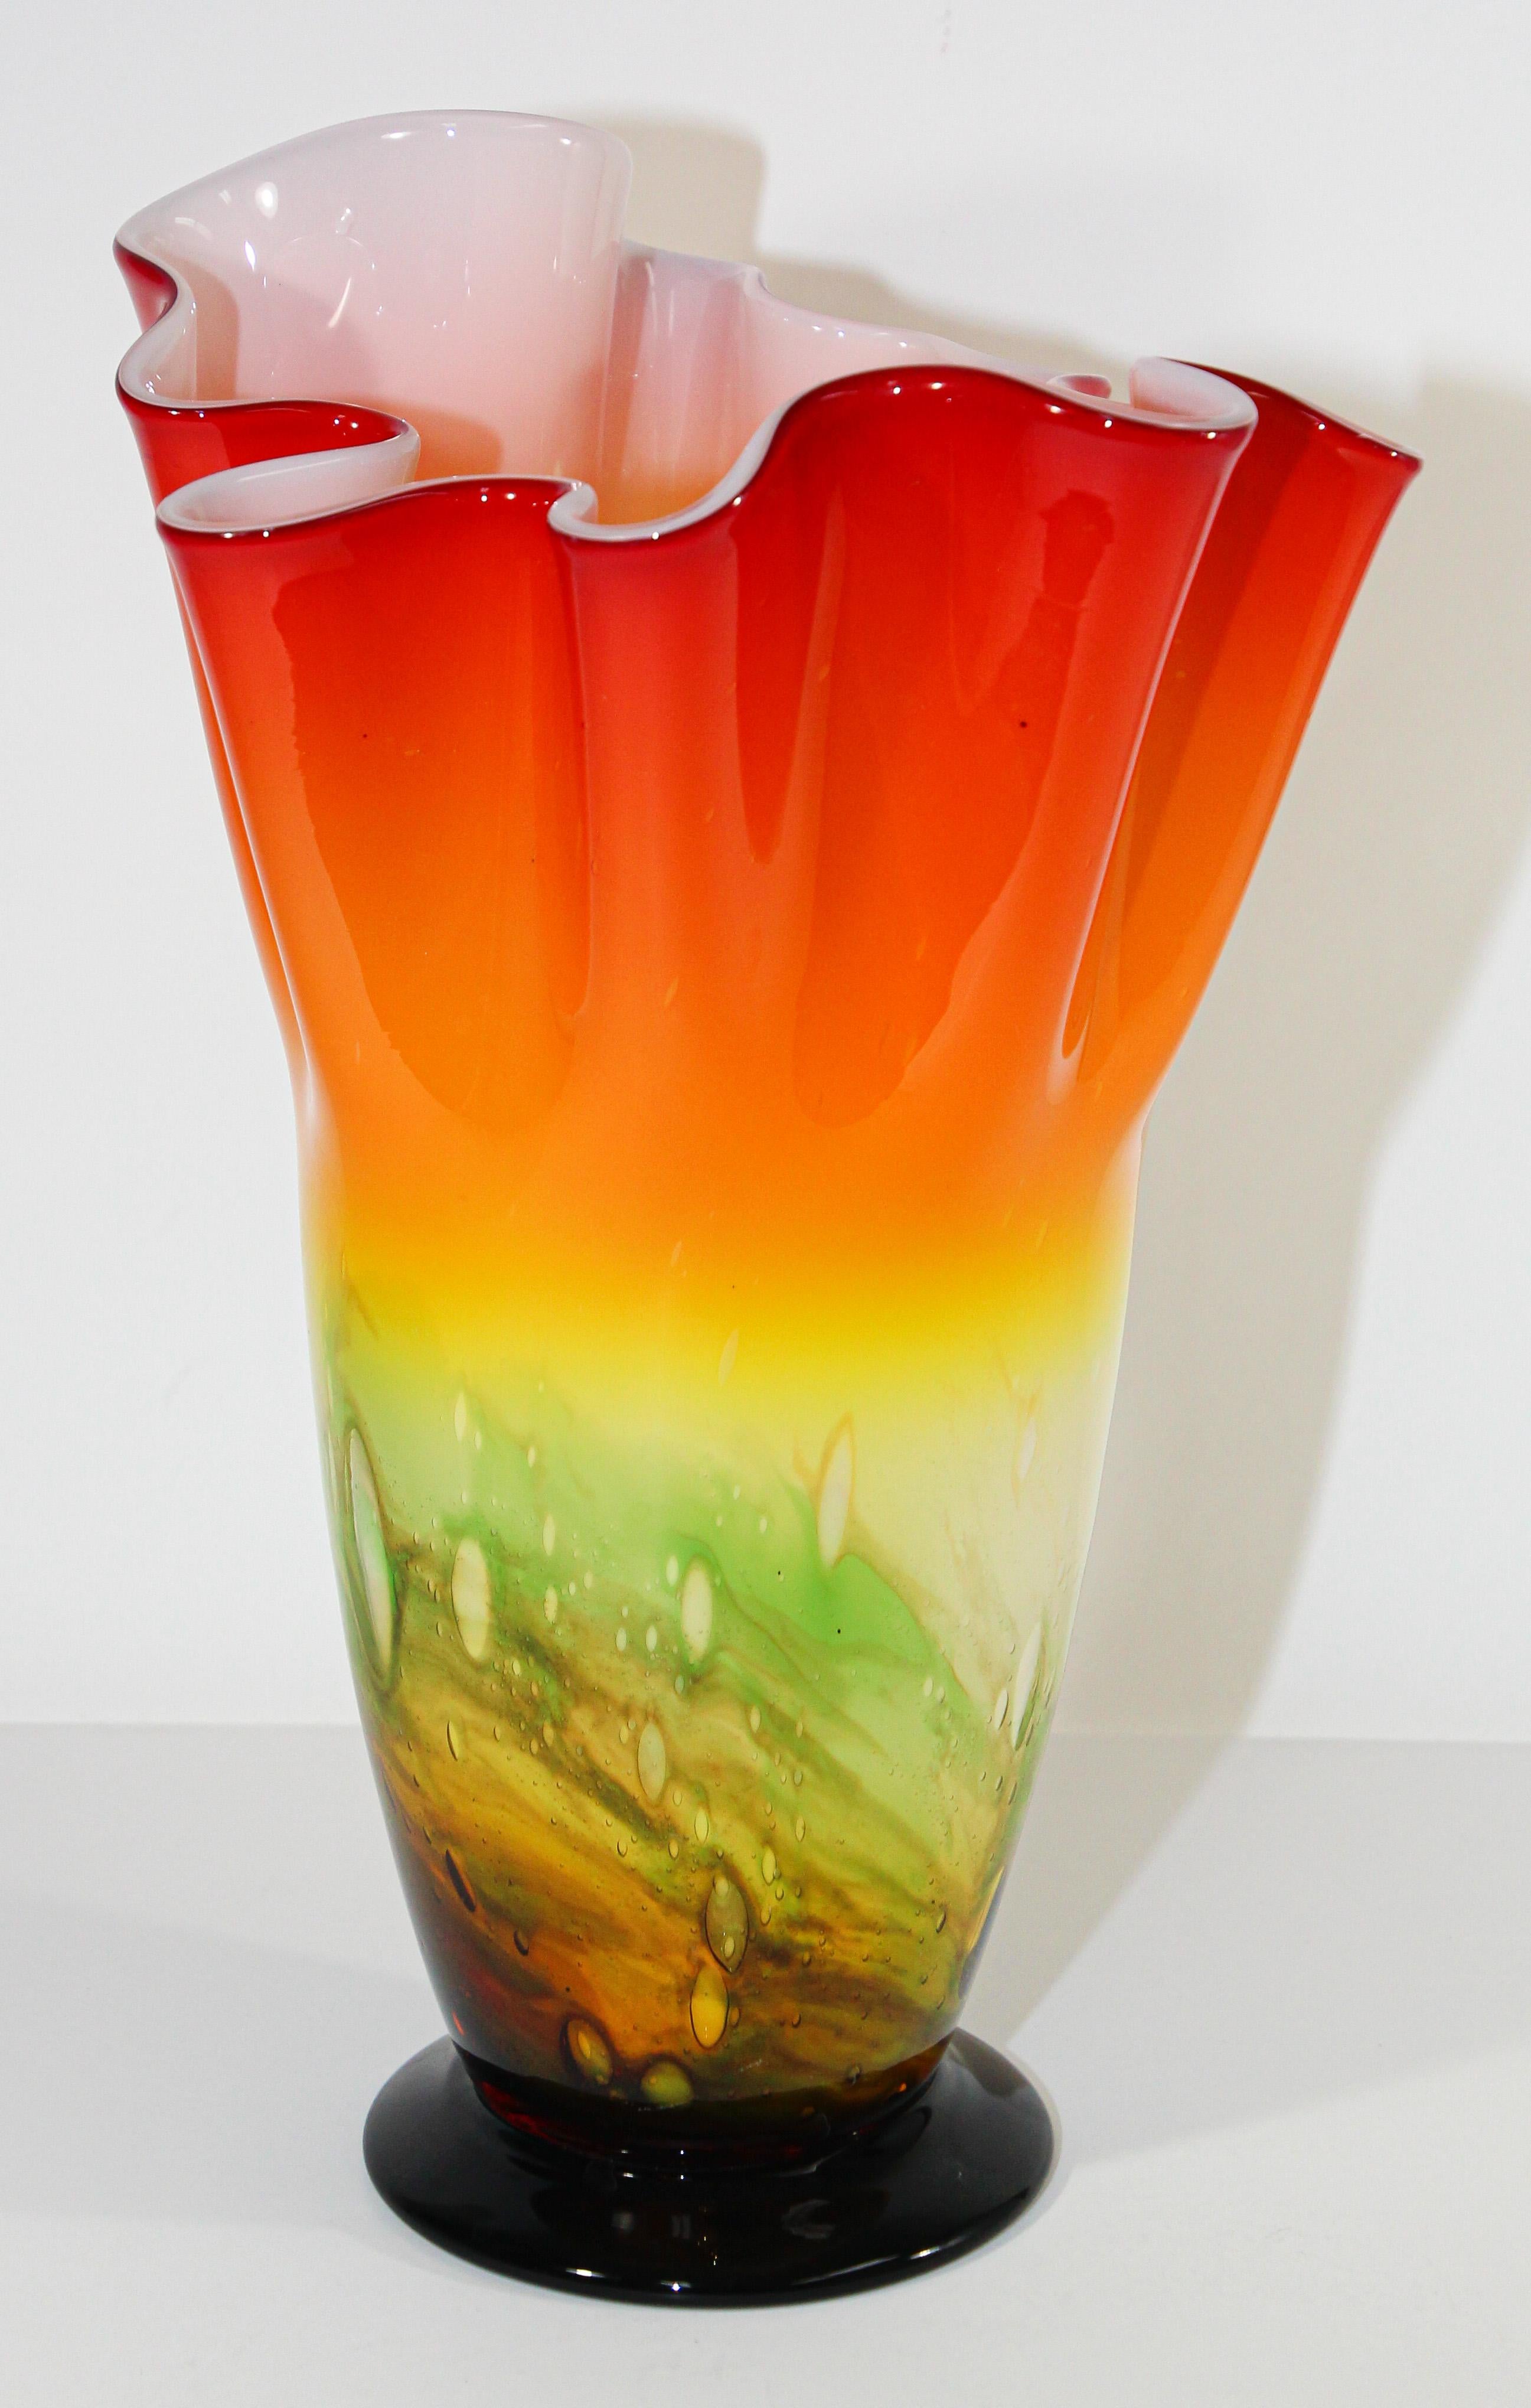 Superbe vase sur pied en verre d'art soufflé à la bouche de style Fulvio Bianconi, de Murano Vénitien, du milieu du 20e siècle, de couleur orange vif et décoratif Fazzoletto.
Vase exquis sculptural en forme organique avec des couleurs vives orange,